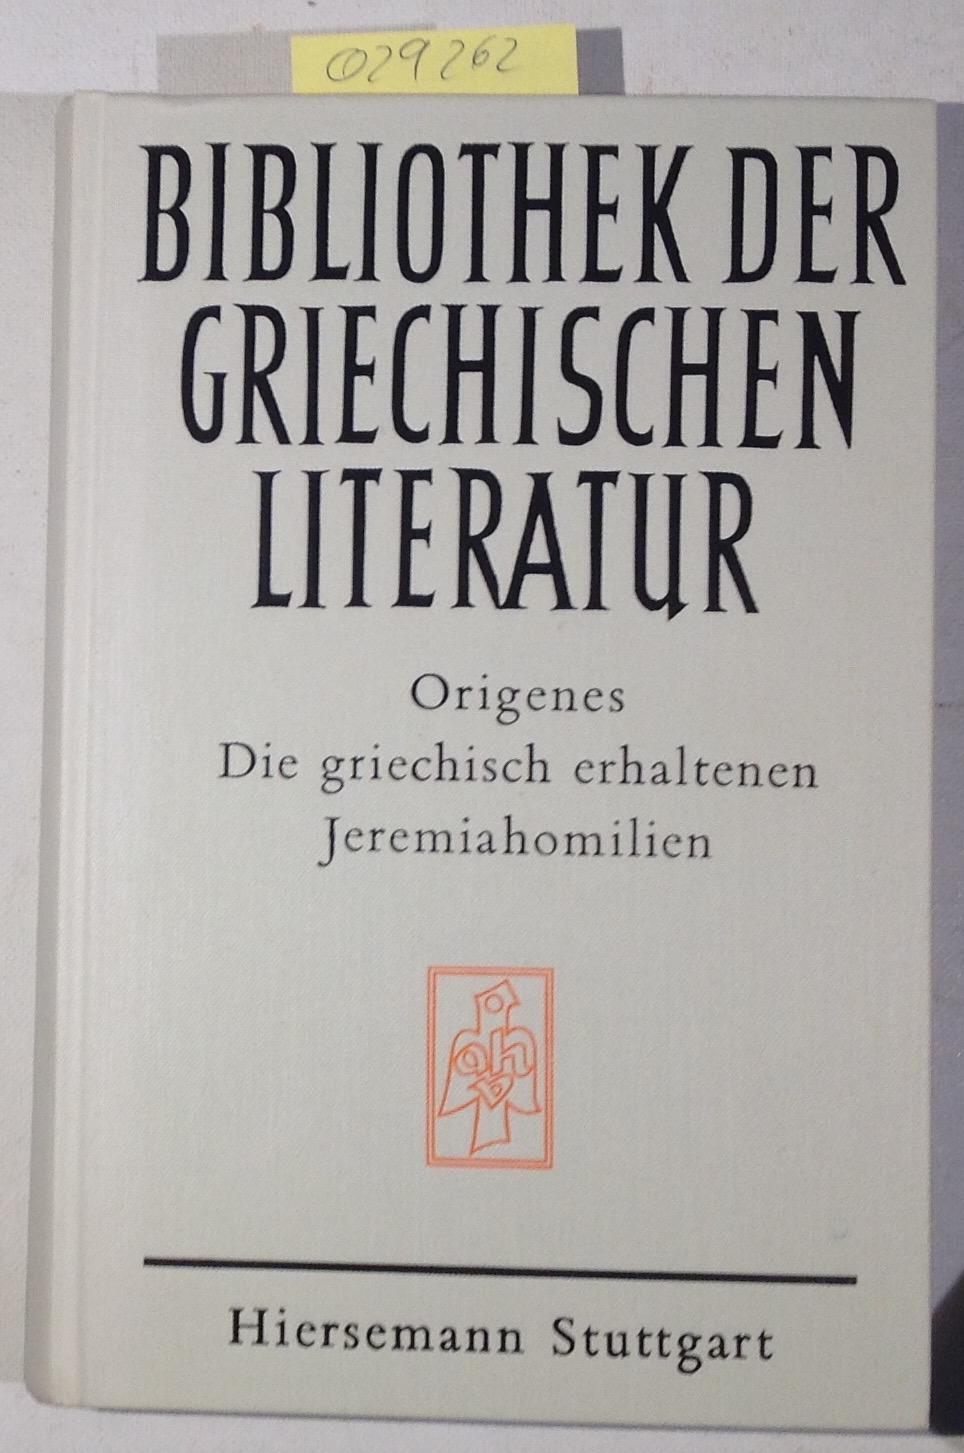 Die griechisch erhaltenen Jeremiahomilien (Bibliothek der griechischen Literatur, Band 10) - Origenes / Schadel, Erwin